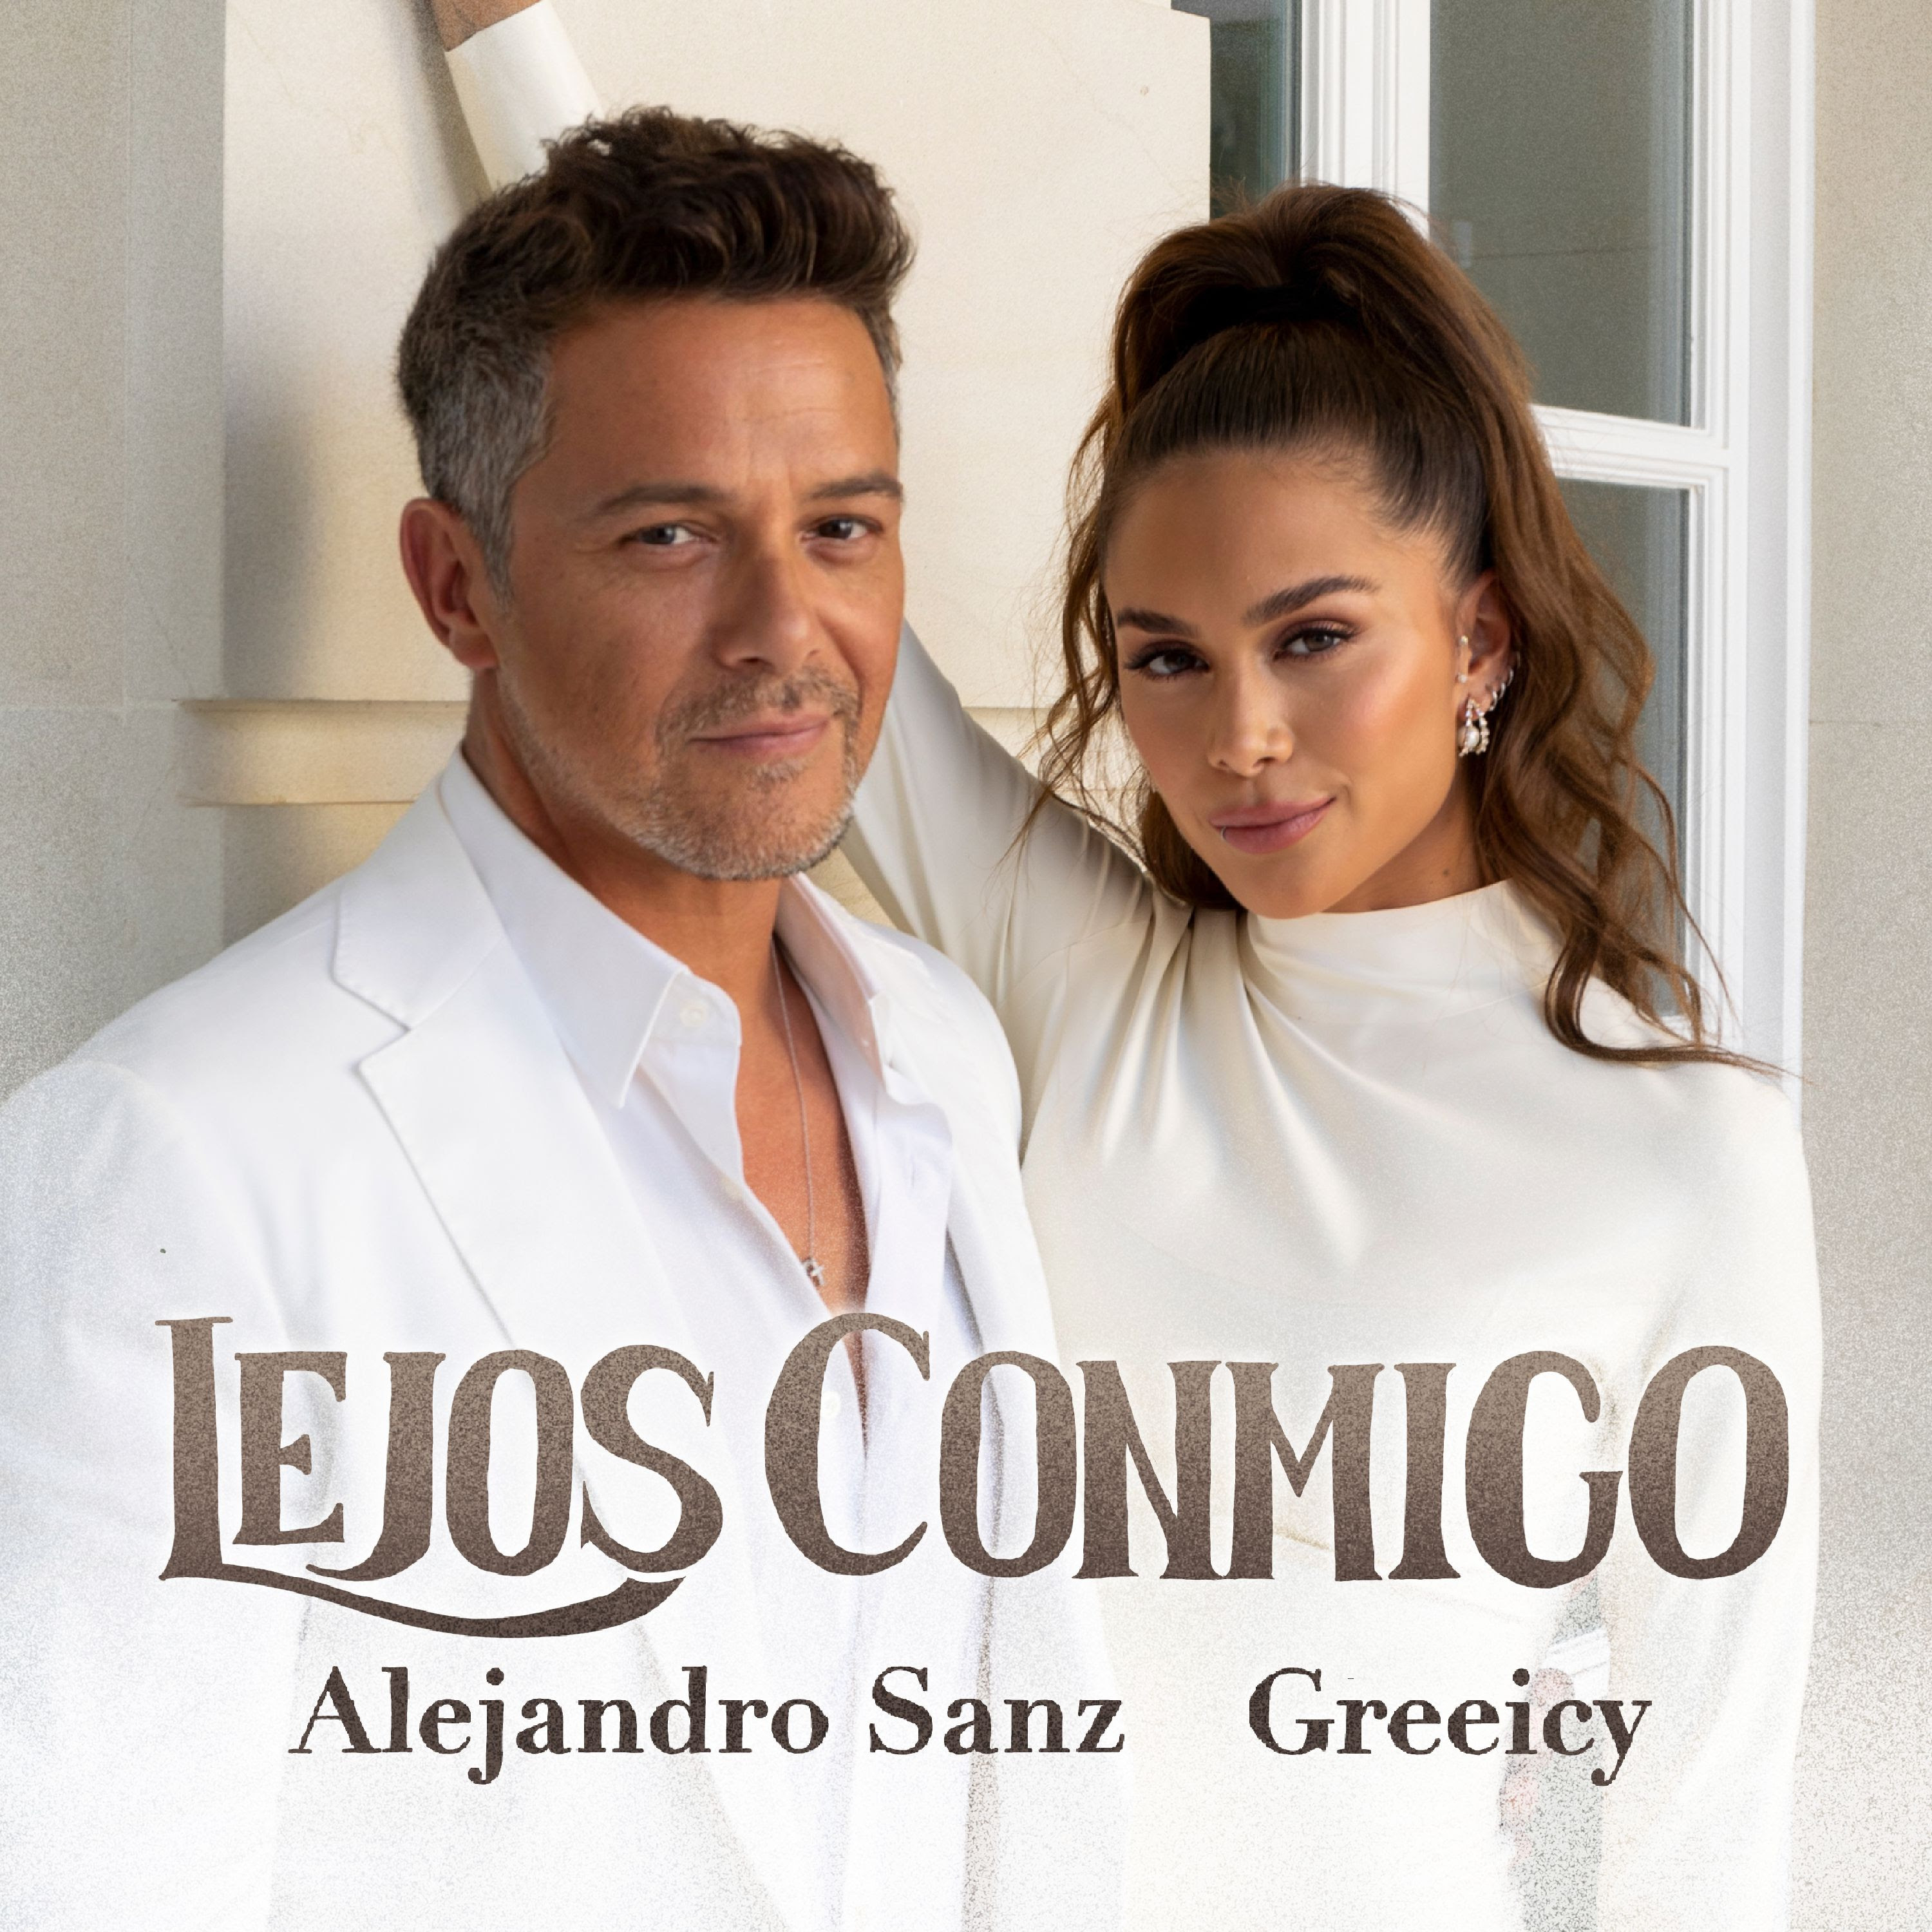 Lejos conmigo': la nueva apuesta musical de Greeicy con Alejandro Sanz